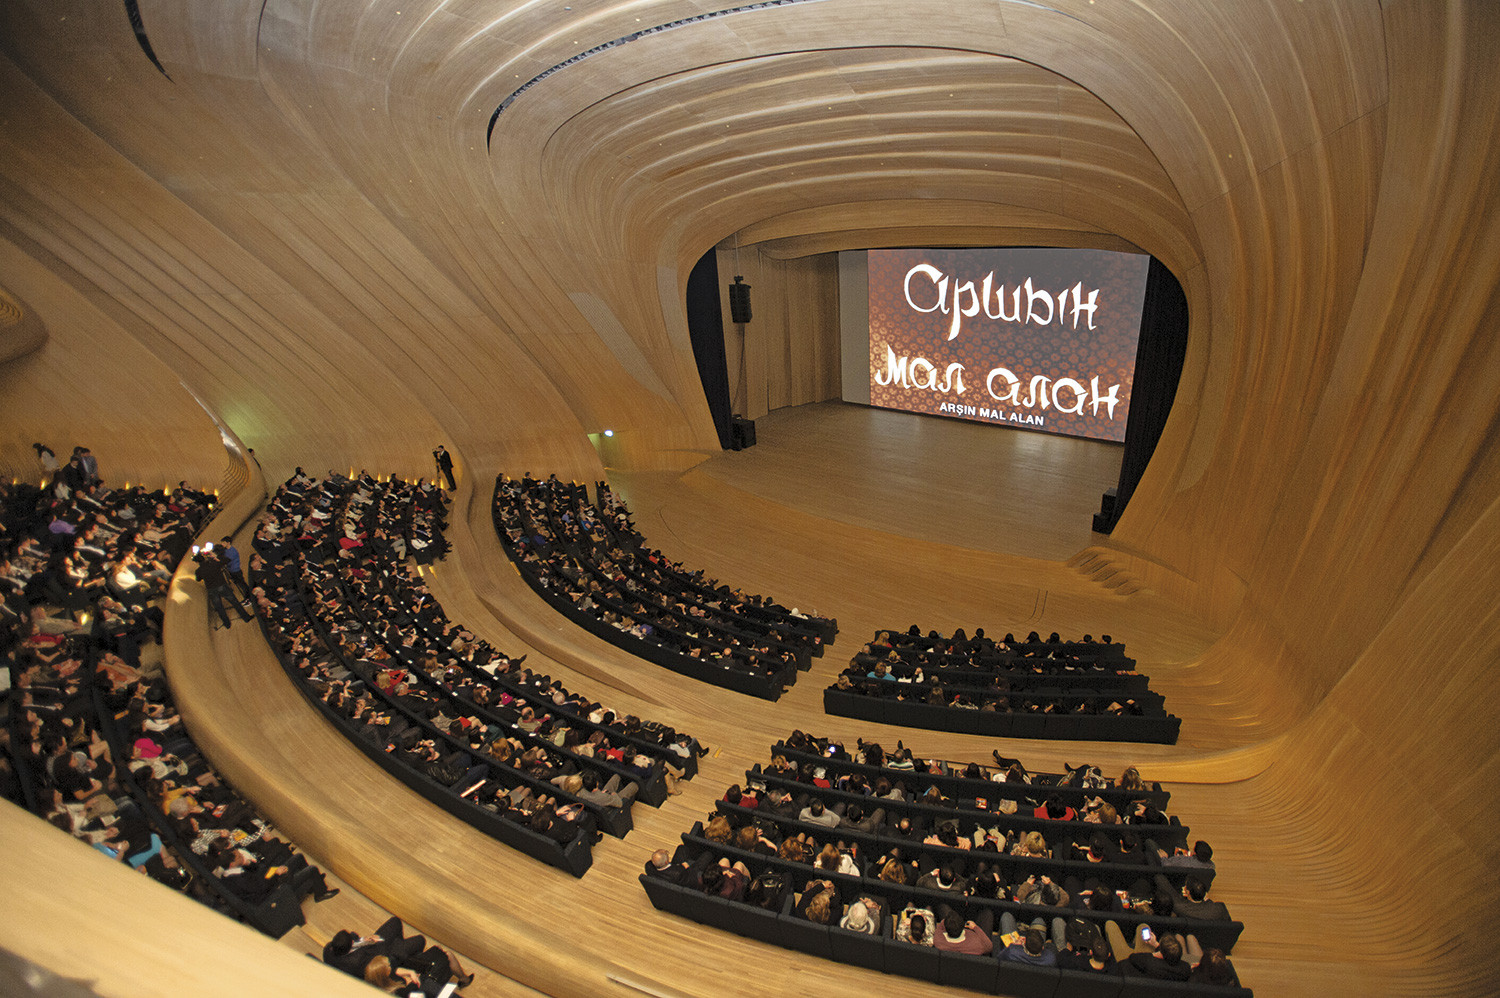 Auditorio del Centro cultural Heydar Aliyev en Bakú, Azerbaiyán